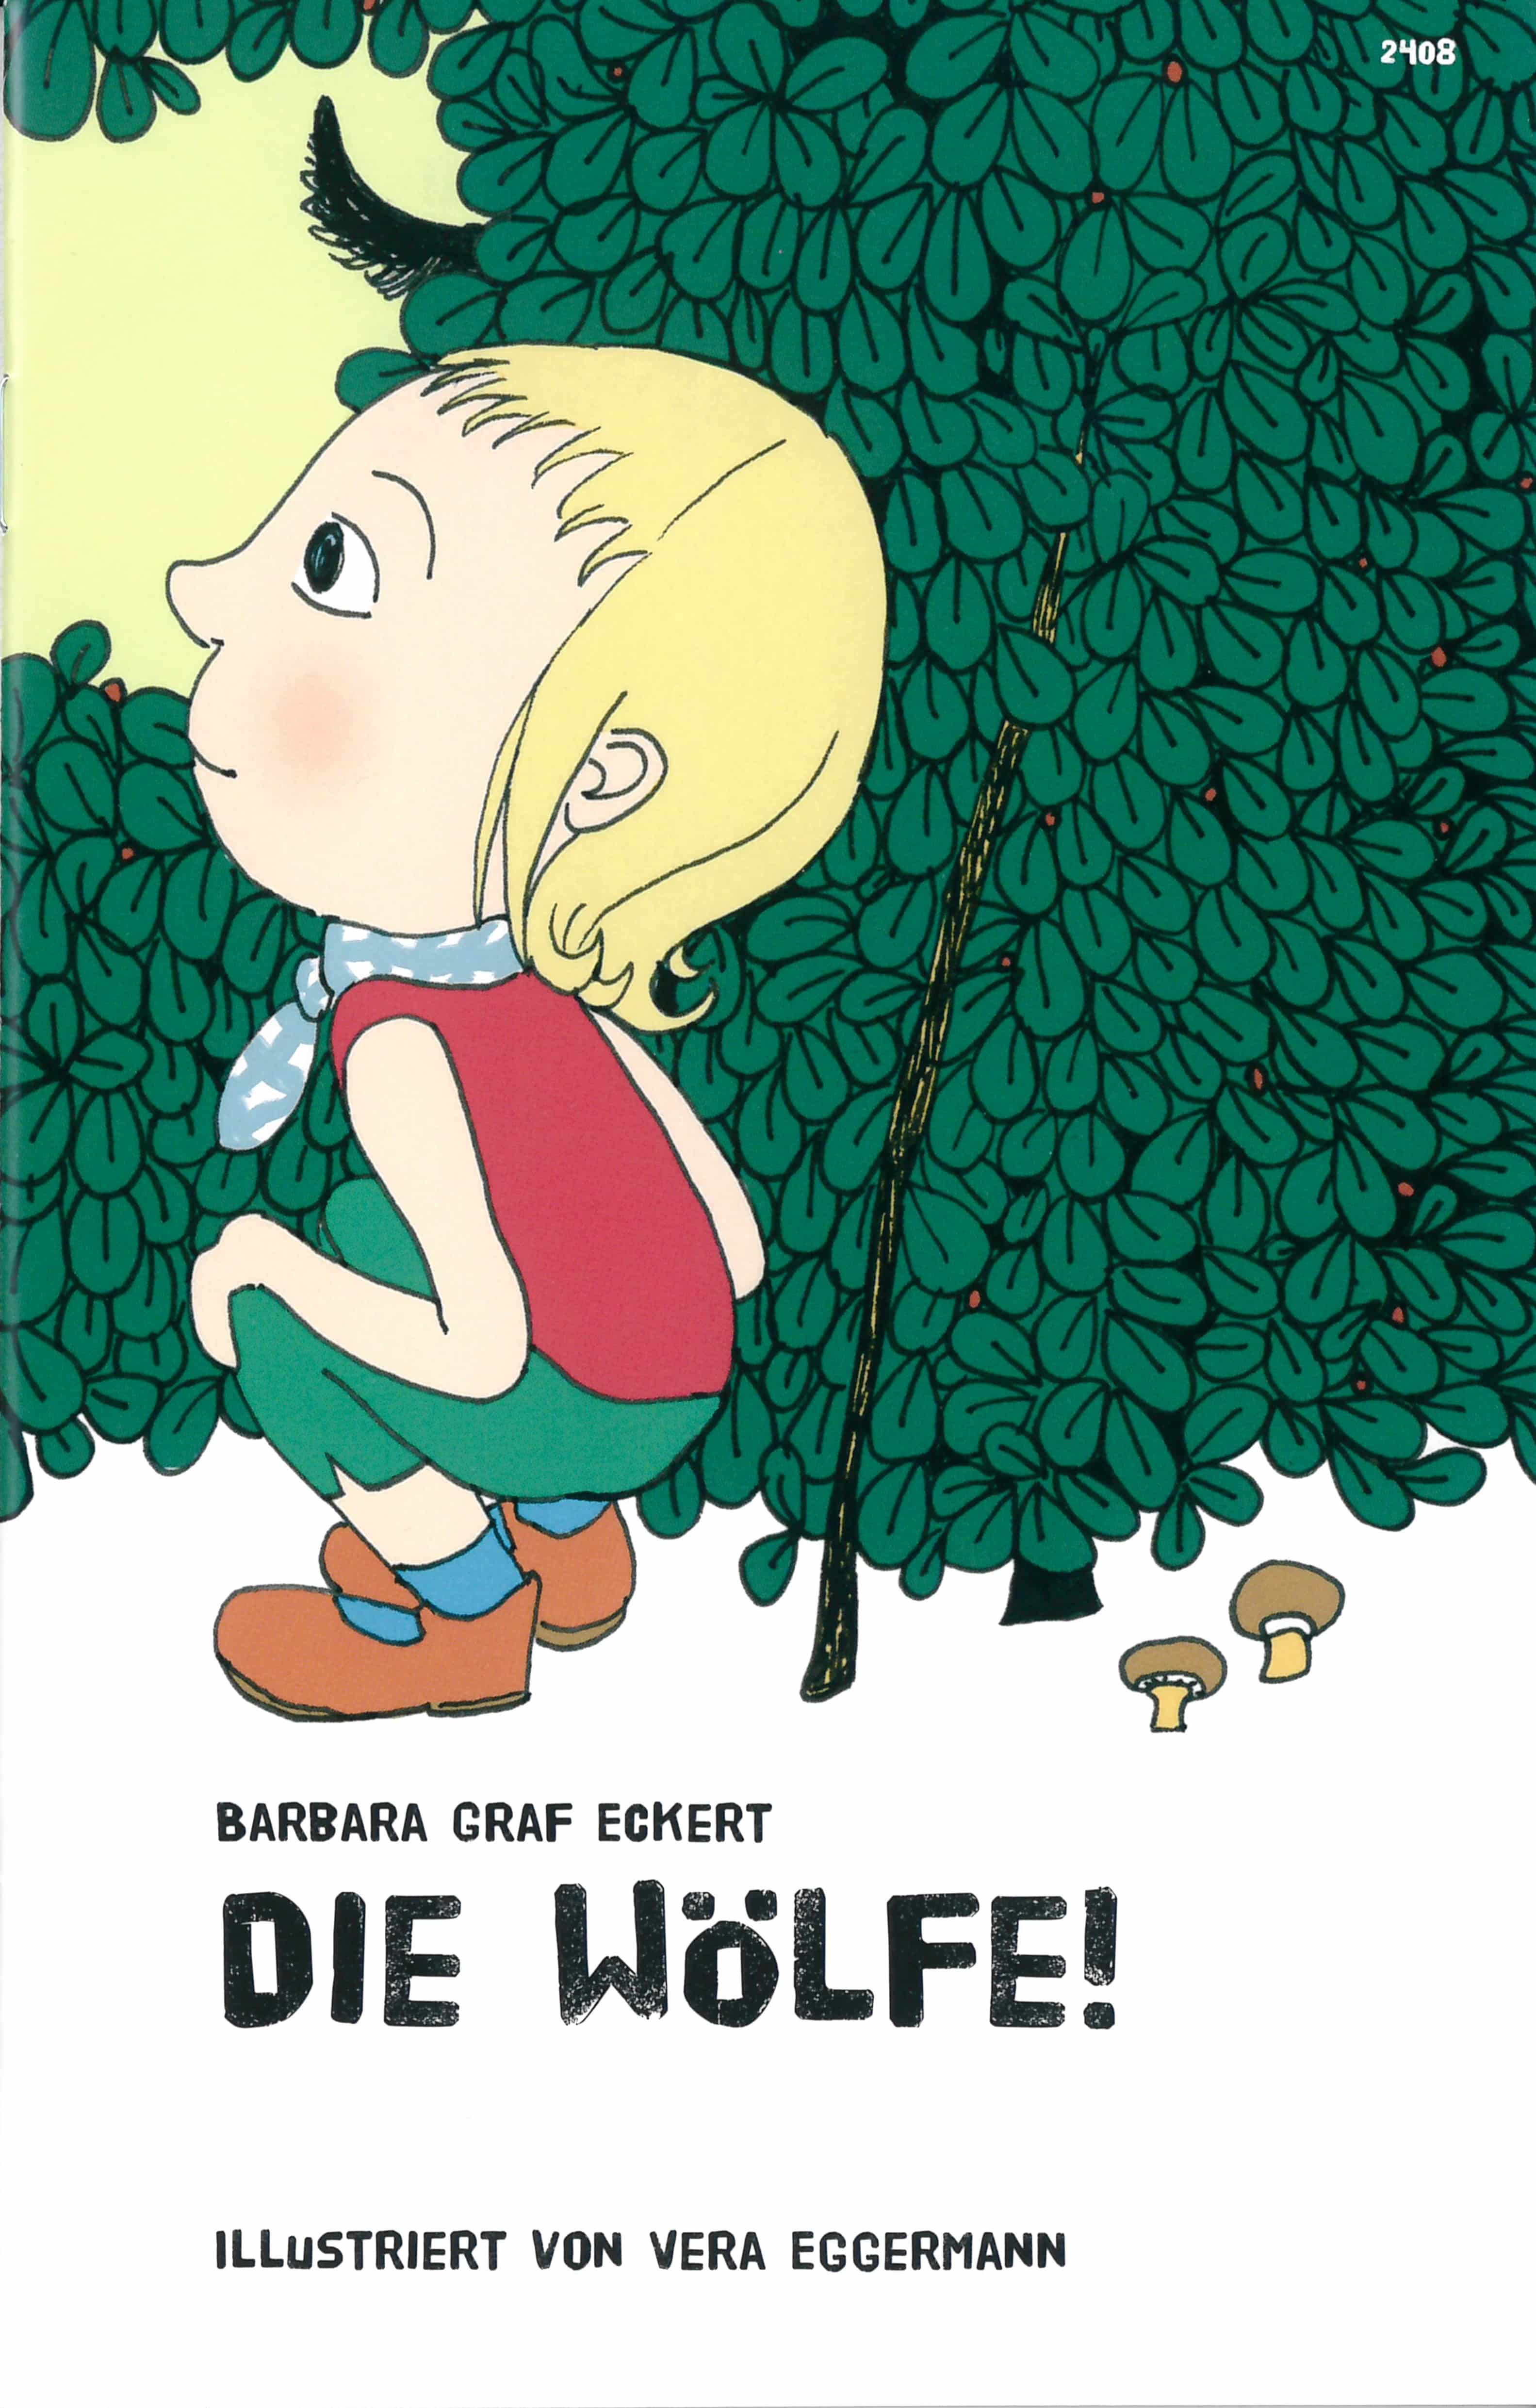 Die Woelfe!, ein Kinderbuch von Barbara Graf Eckert, Illustration von Vera Eggermann, SJW Verlag, Buchstabengeschichte